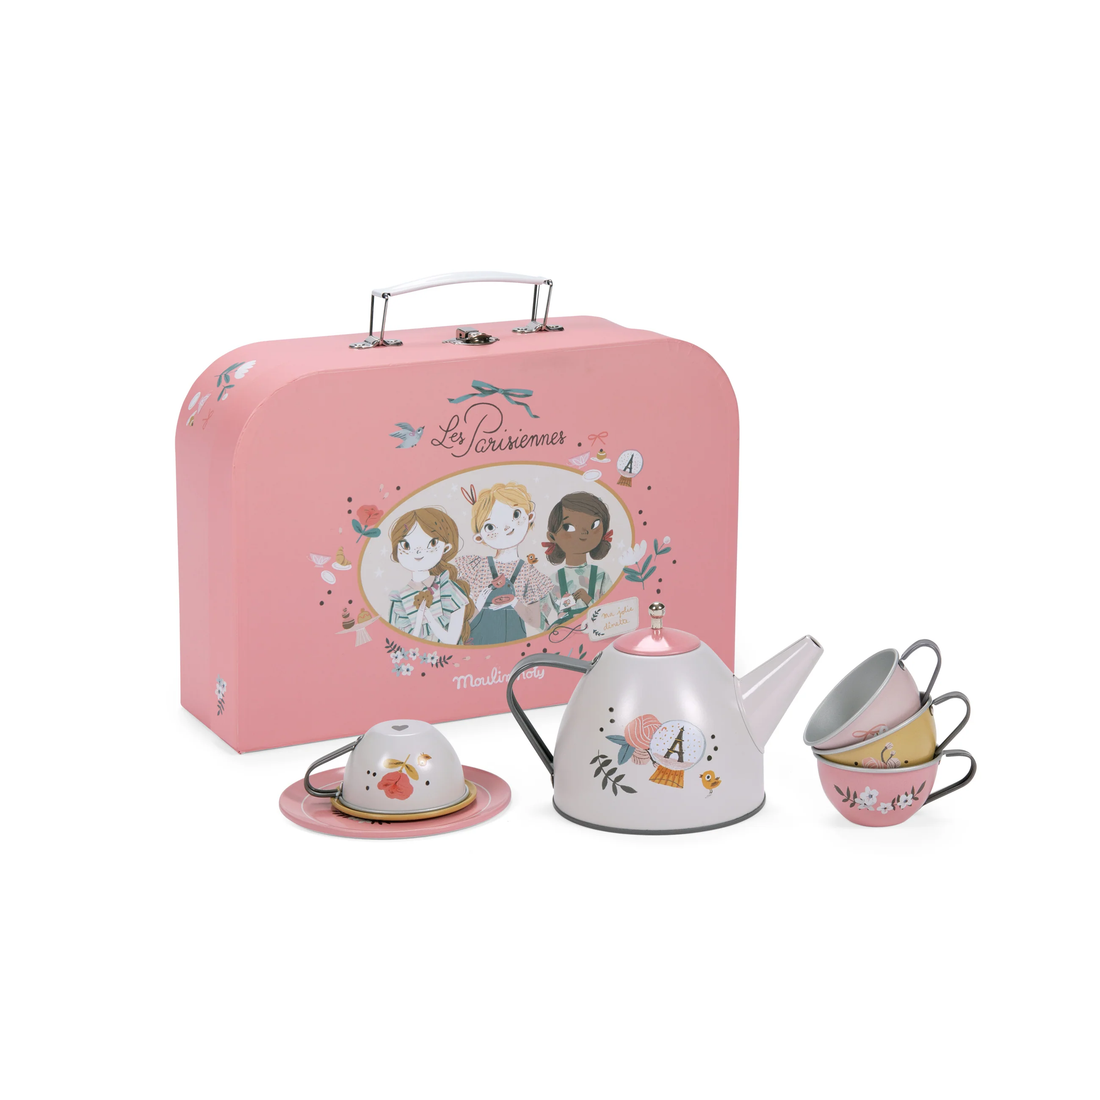 the parisiennes tea party set suitcase